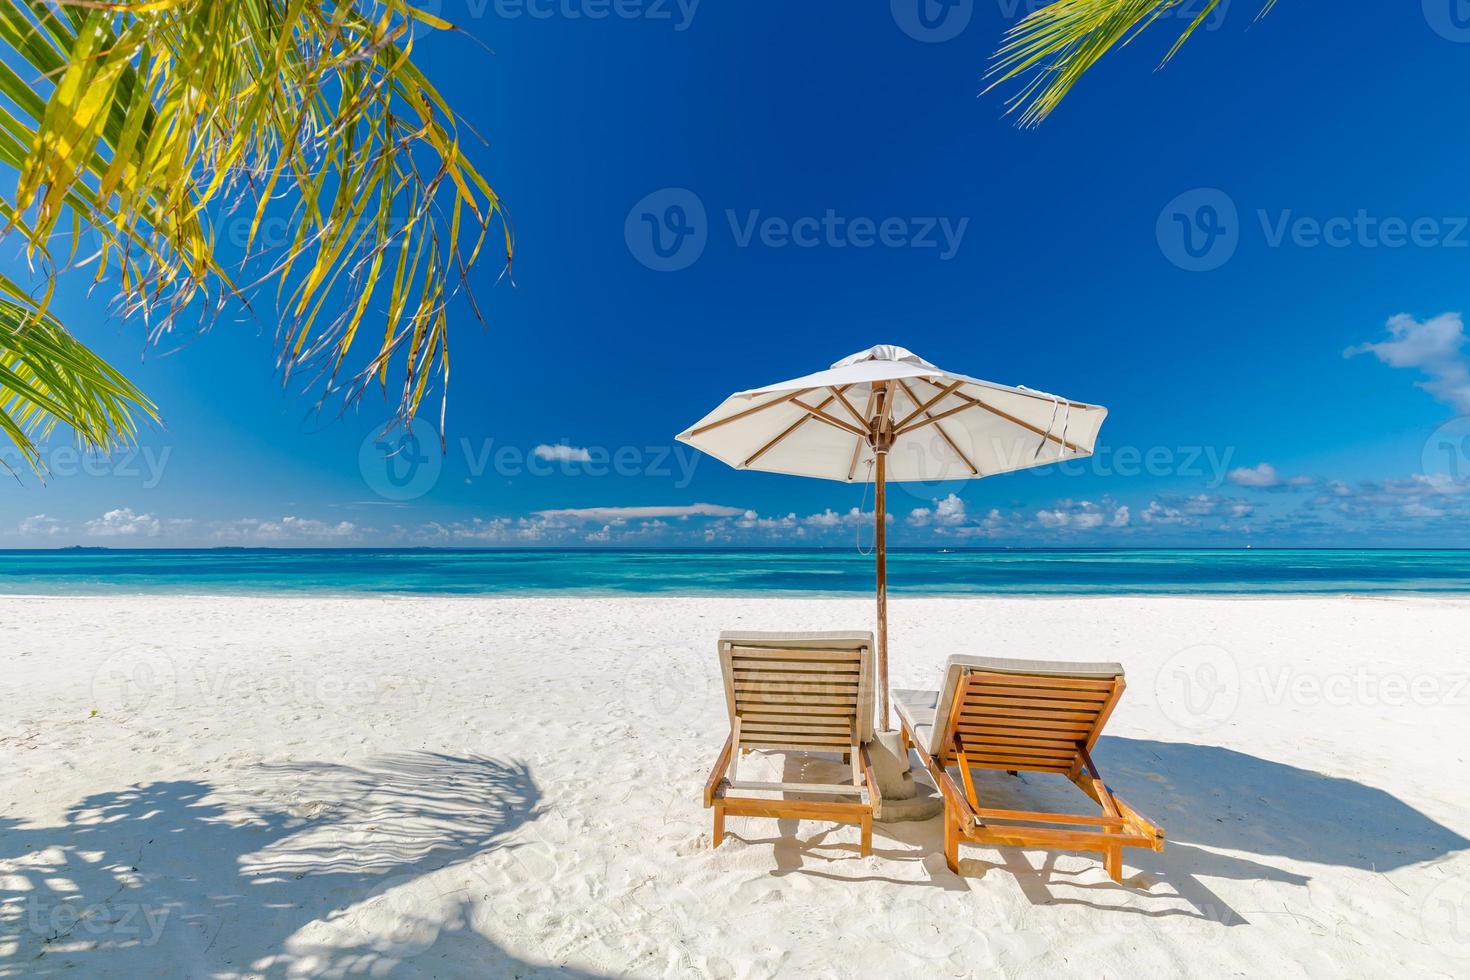 mooi tropisch strand spandoek. wit zand en kokosnoot palmen en strand stoelen net zo breed panorama achtergrond concept. verbazingwekkend strand landschap, romantisch tafereel voor paar of huwelijksreis reizen bestemmingen foto